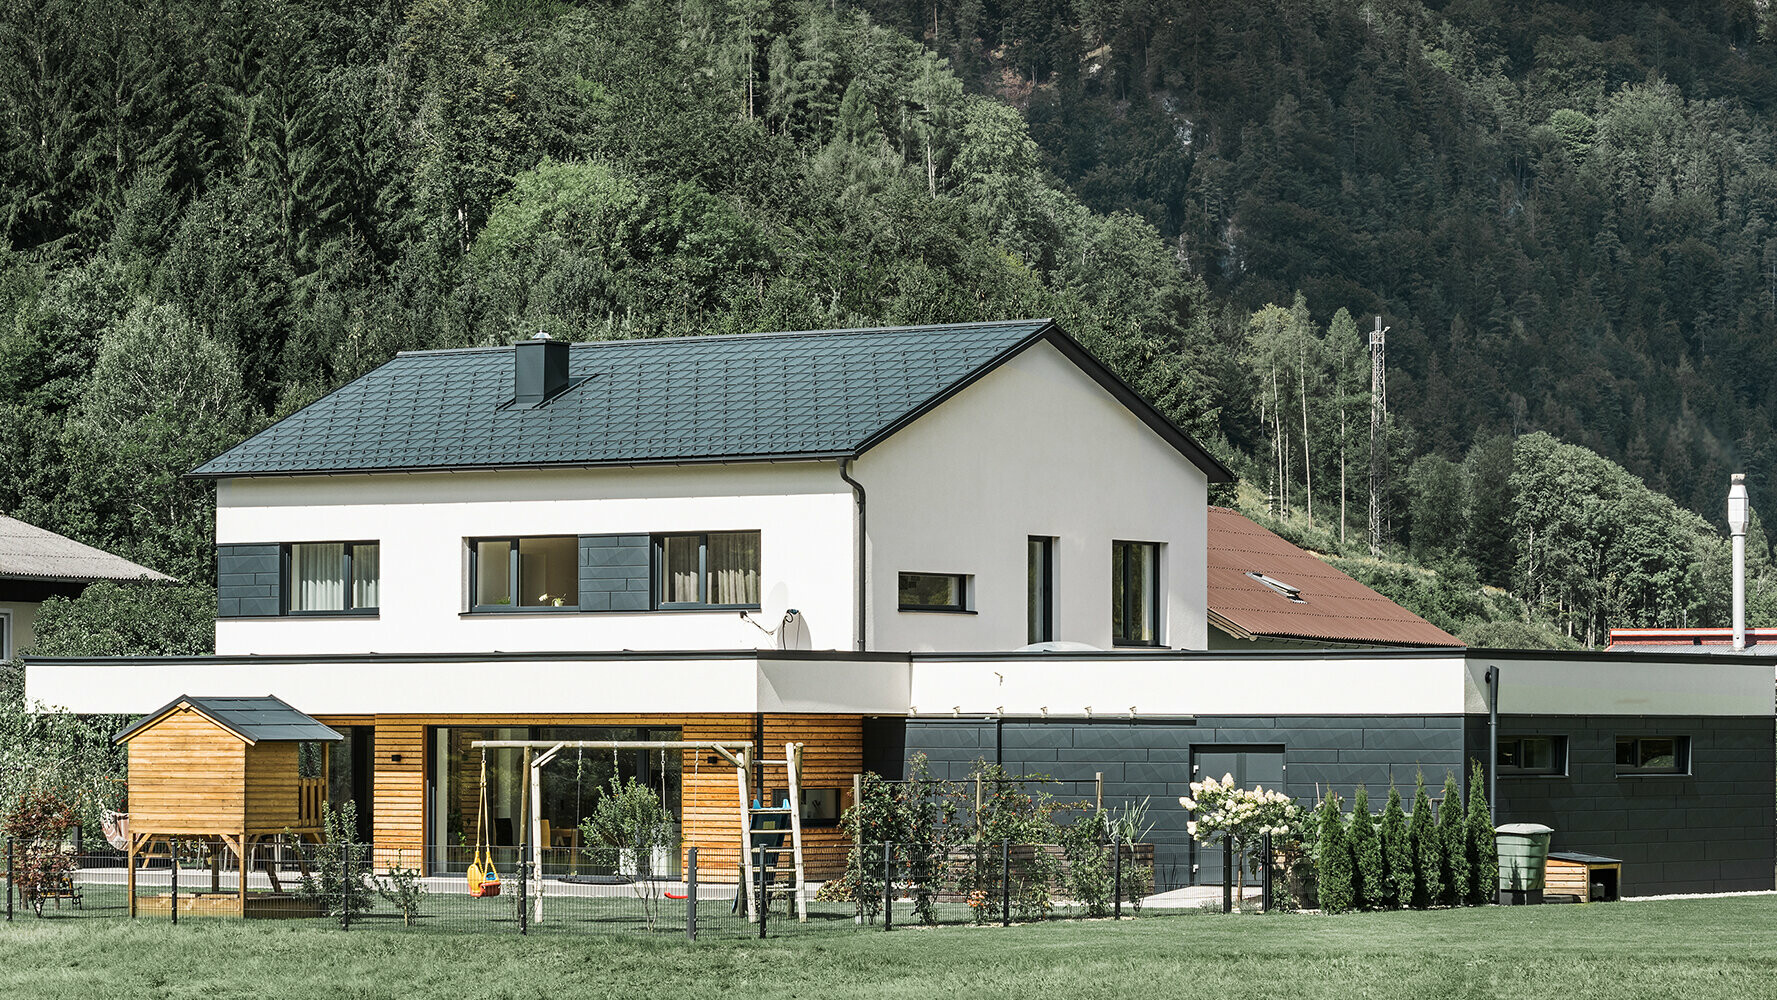 Nowy dom jednorodzinny z fasadą z drewna modrzewiowego w połączeniu z PREFA Siding.X w kolorze antracytowym.